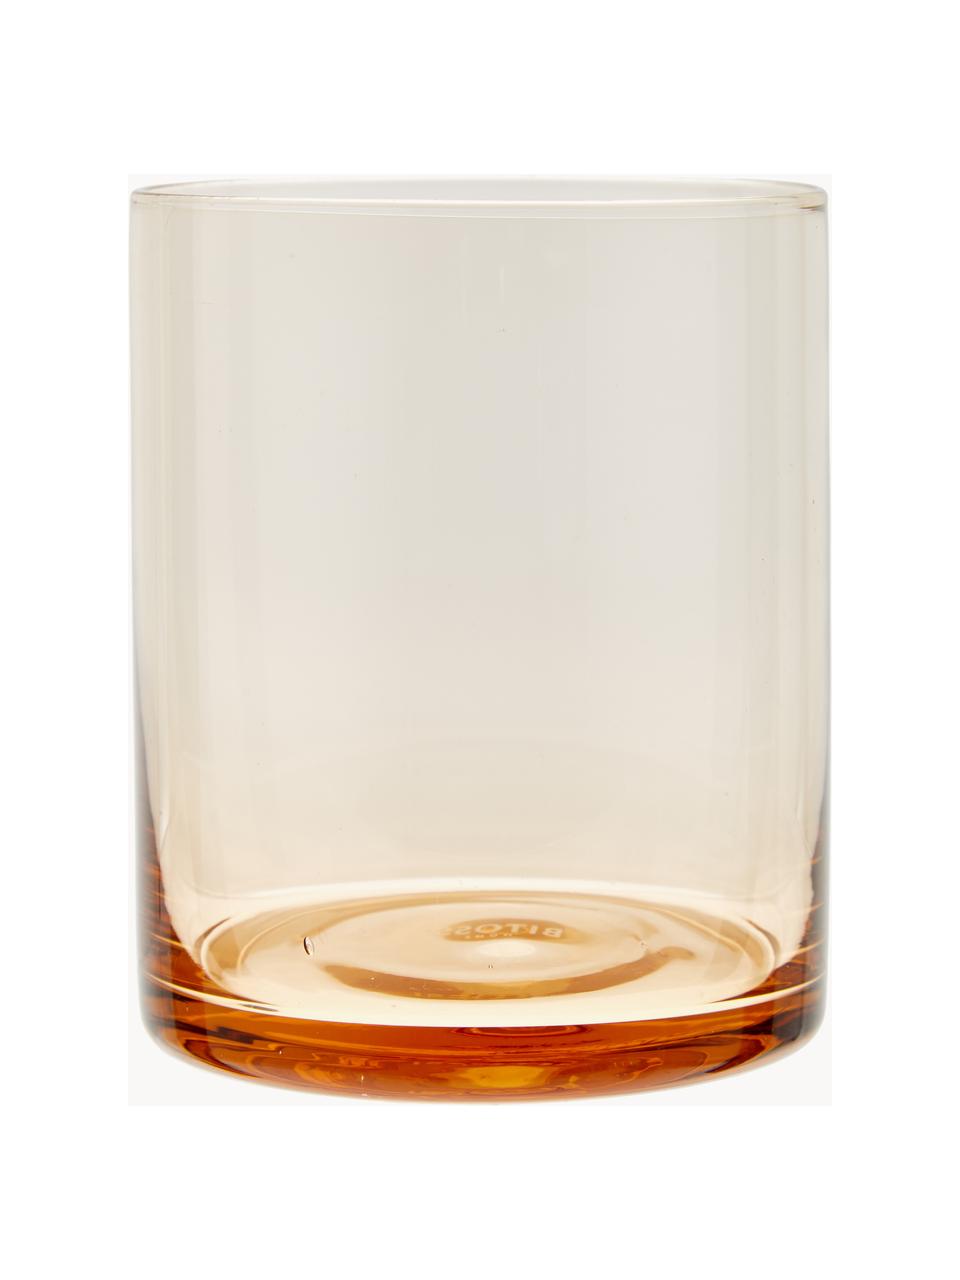 Mundgeblasene Wassergläser Diseguale, 6er-Set, Glas, mundgeblasen, Bunt, transparent, Ø 8 x H 10 cm, 200 ml